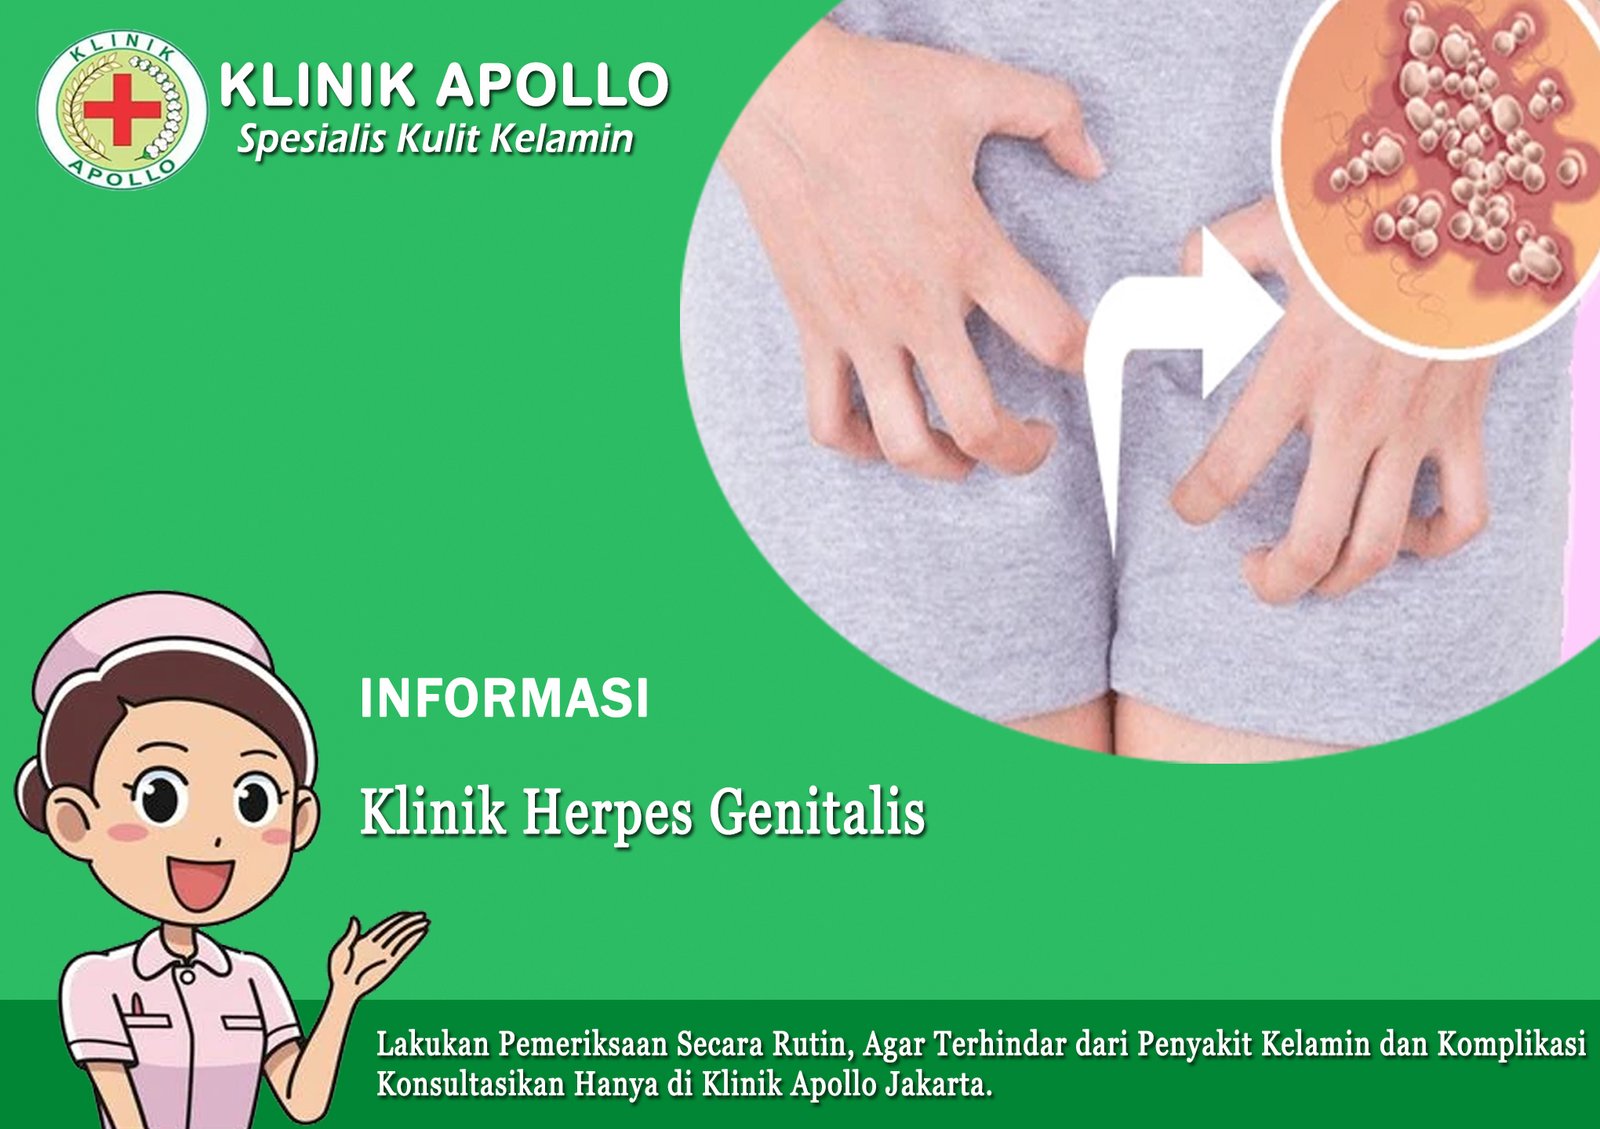 Klinik Herpes Genitalis